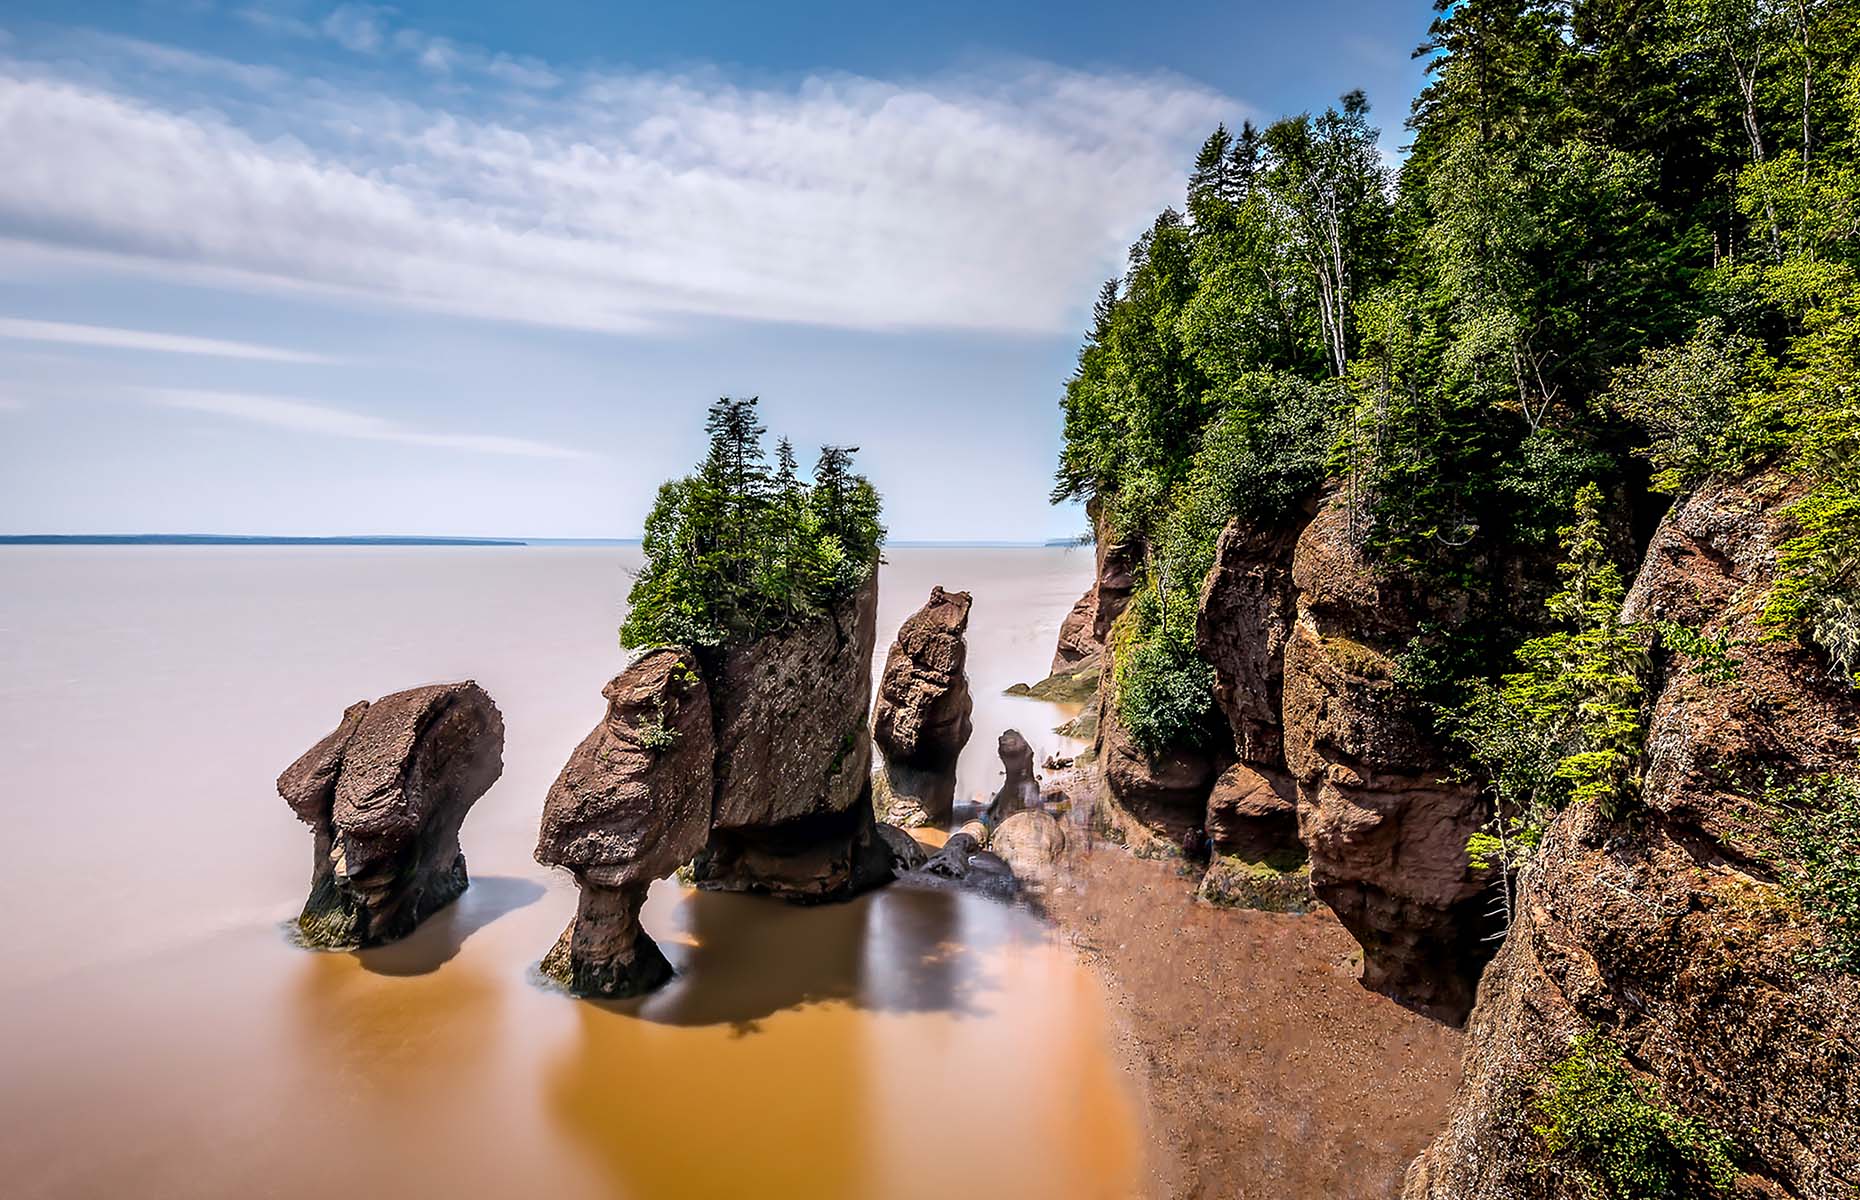 Hopewell Rocks in New Brunswick (Image: Rush Photography Calgary/Shutterstock)